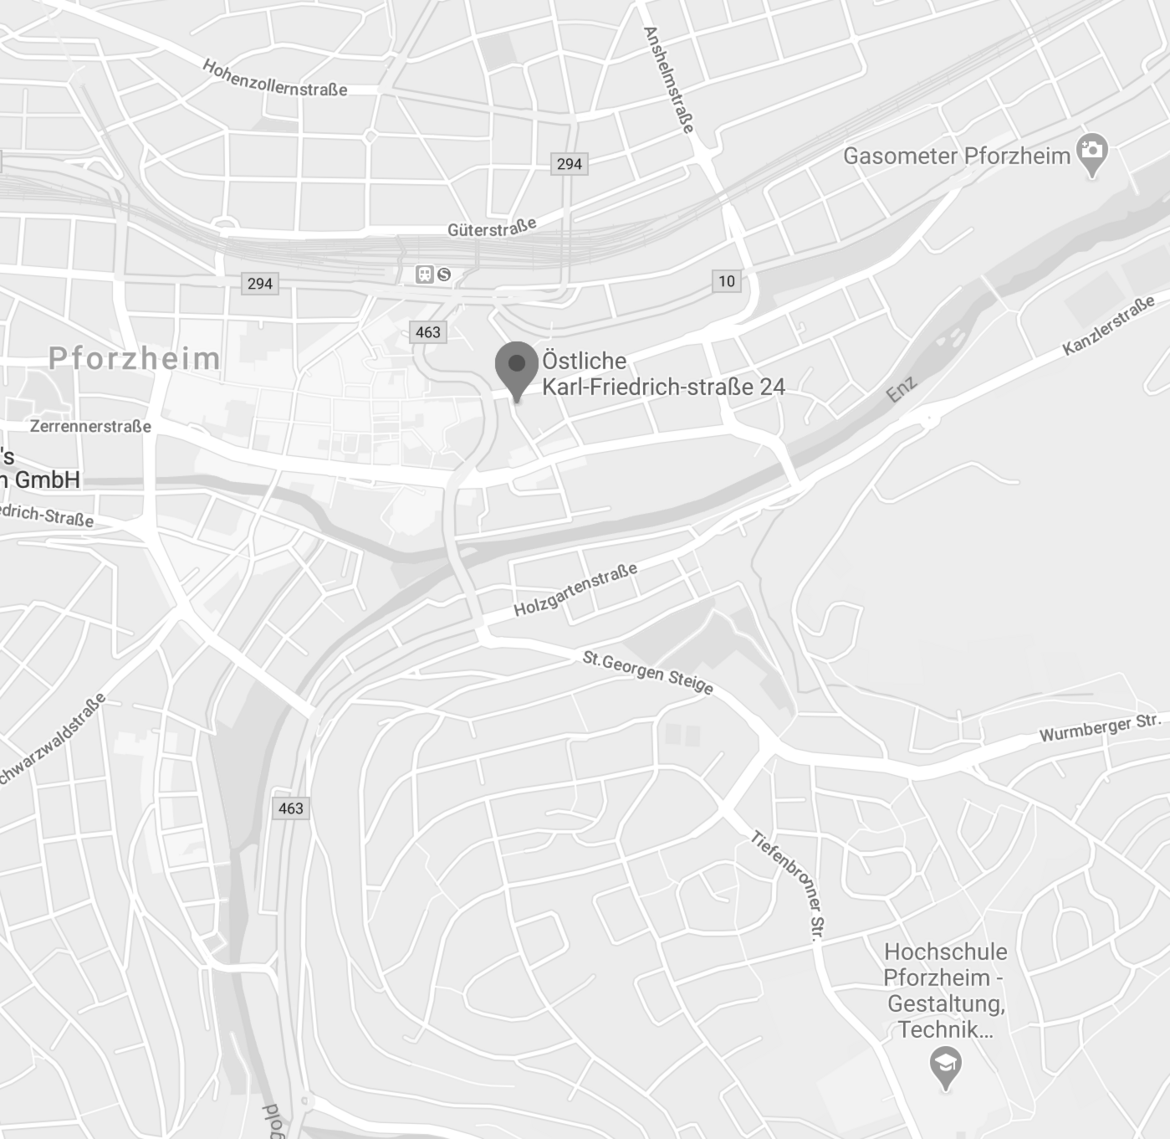 zu sehen ist ein Foto von Google Maps mit dem Standort der DFPF